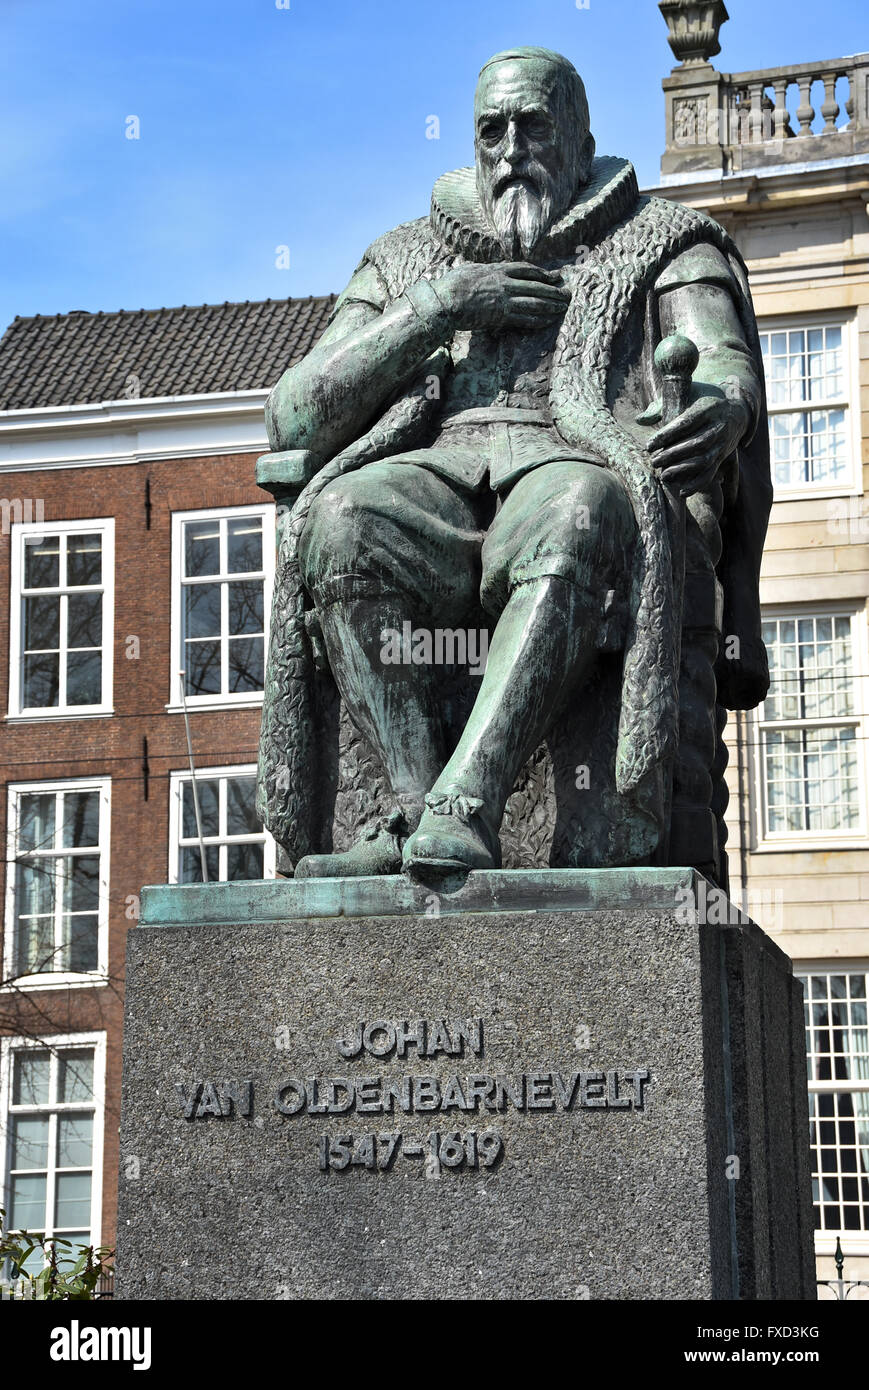 Johan van Oldenbarnevelt statua opposto del parlamento olandese Paesi Bassi l'Aia ( Johan van Oldenbarnevelt 1547 - 1619 era uno statista olandese che ha giocato un ruolo importante nella lotta olandese per l'indipendenza dalla Spagna ) Foto Stock